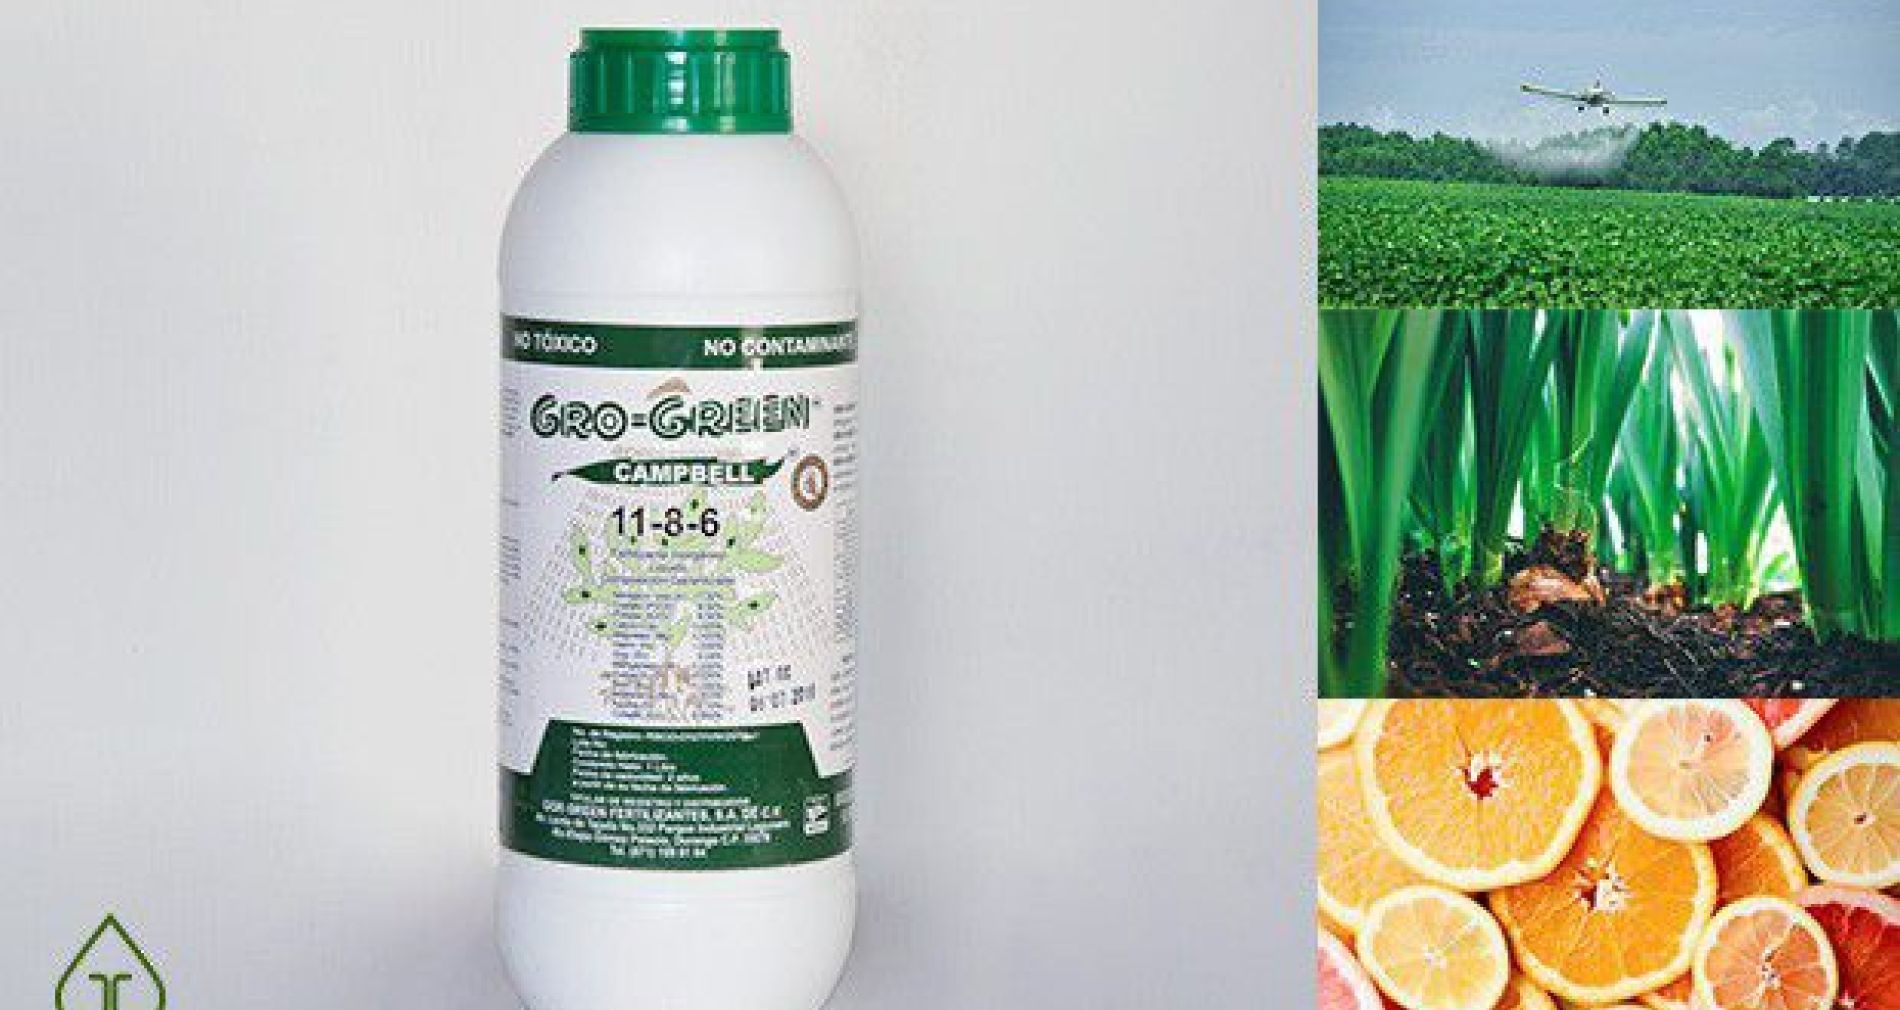 Gro Green Campbell Fórmula 11-8-6 Fertilizante Foliar Líquido de alta concentración